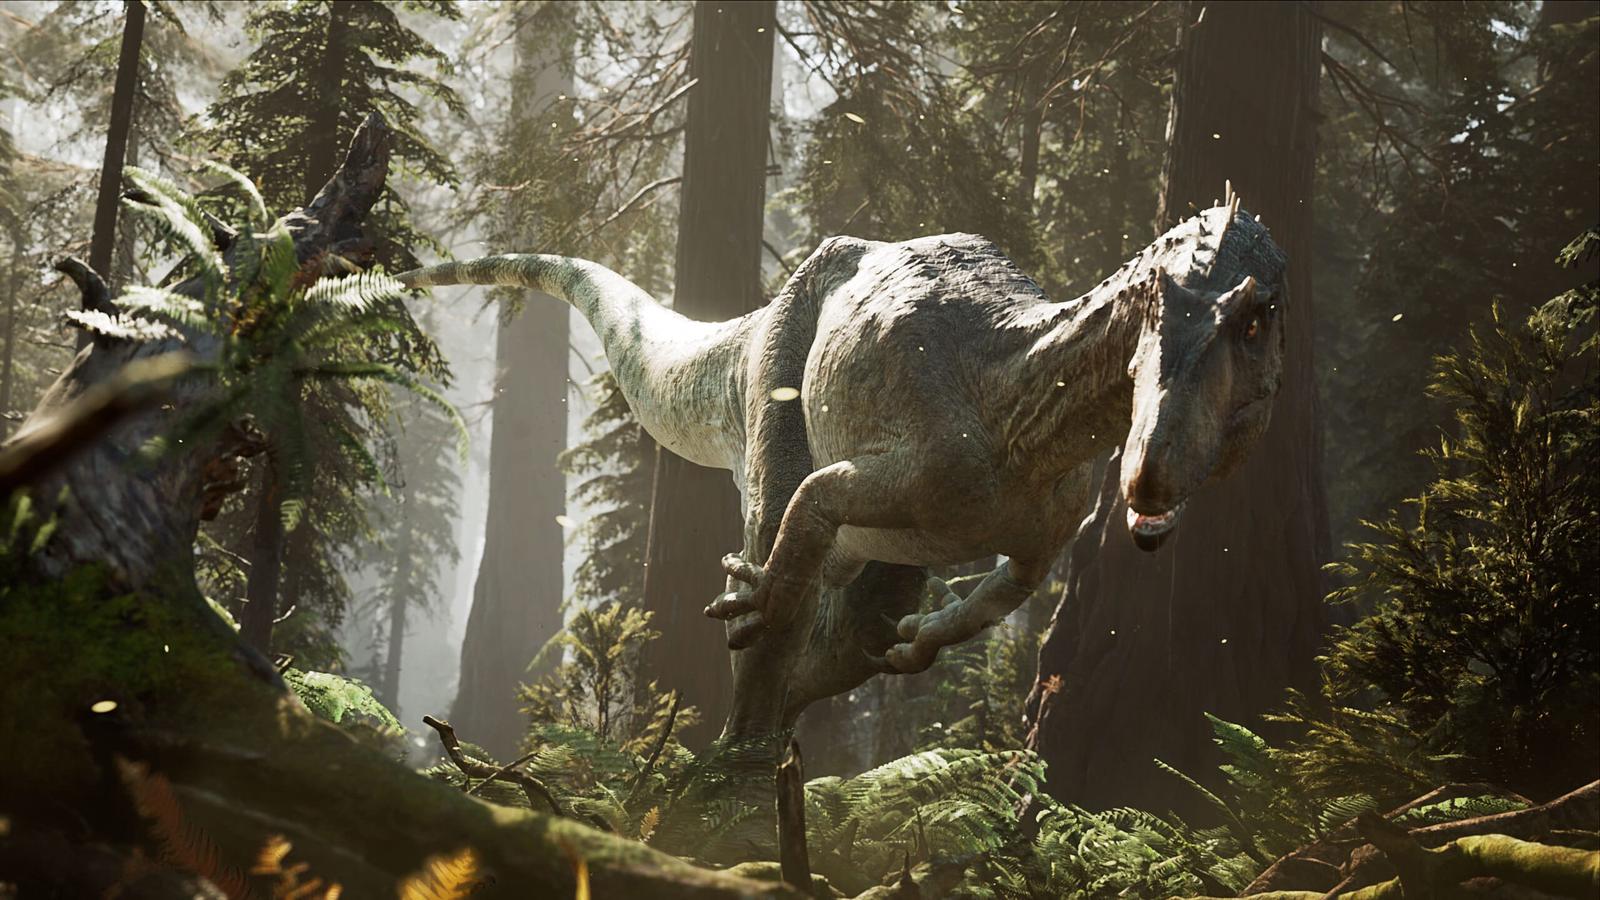 Dinosaur Survival Run: Jungle of Despair - IGN